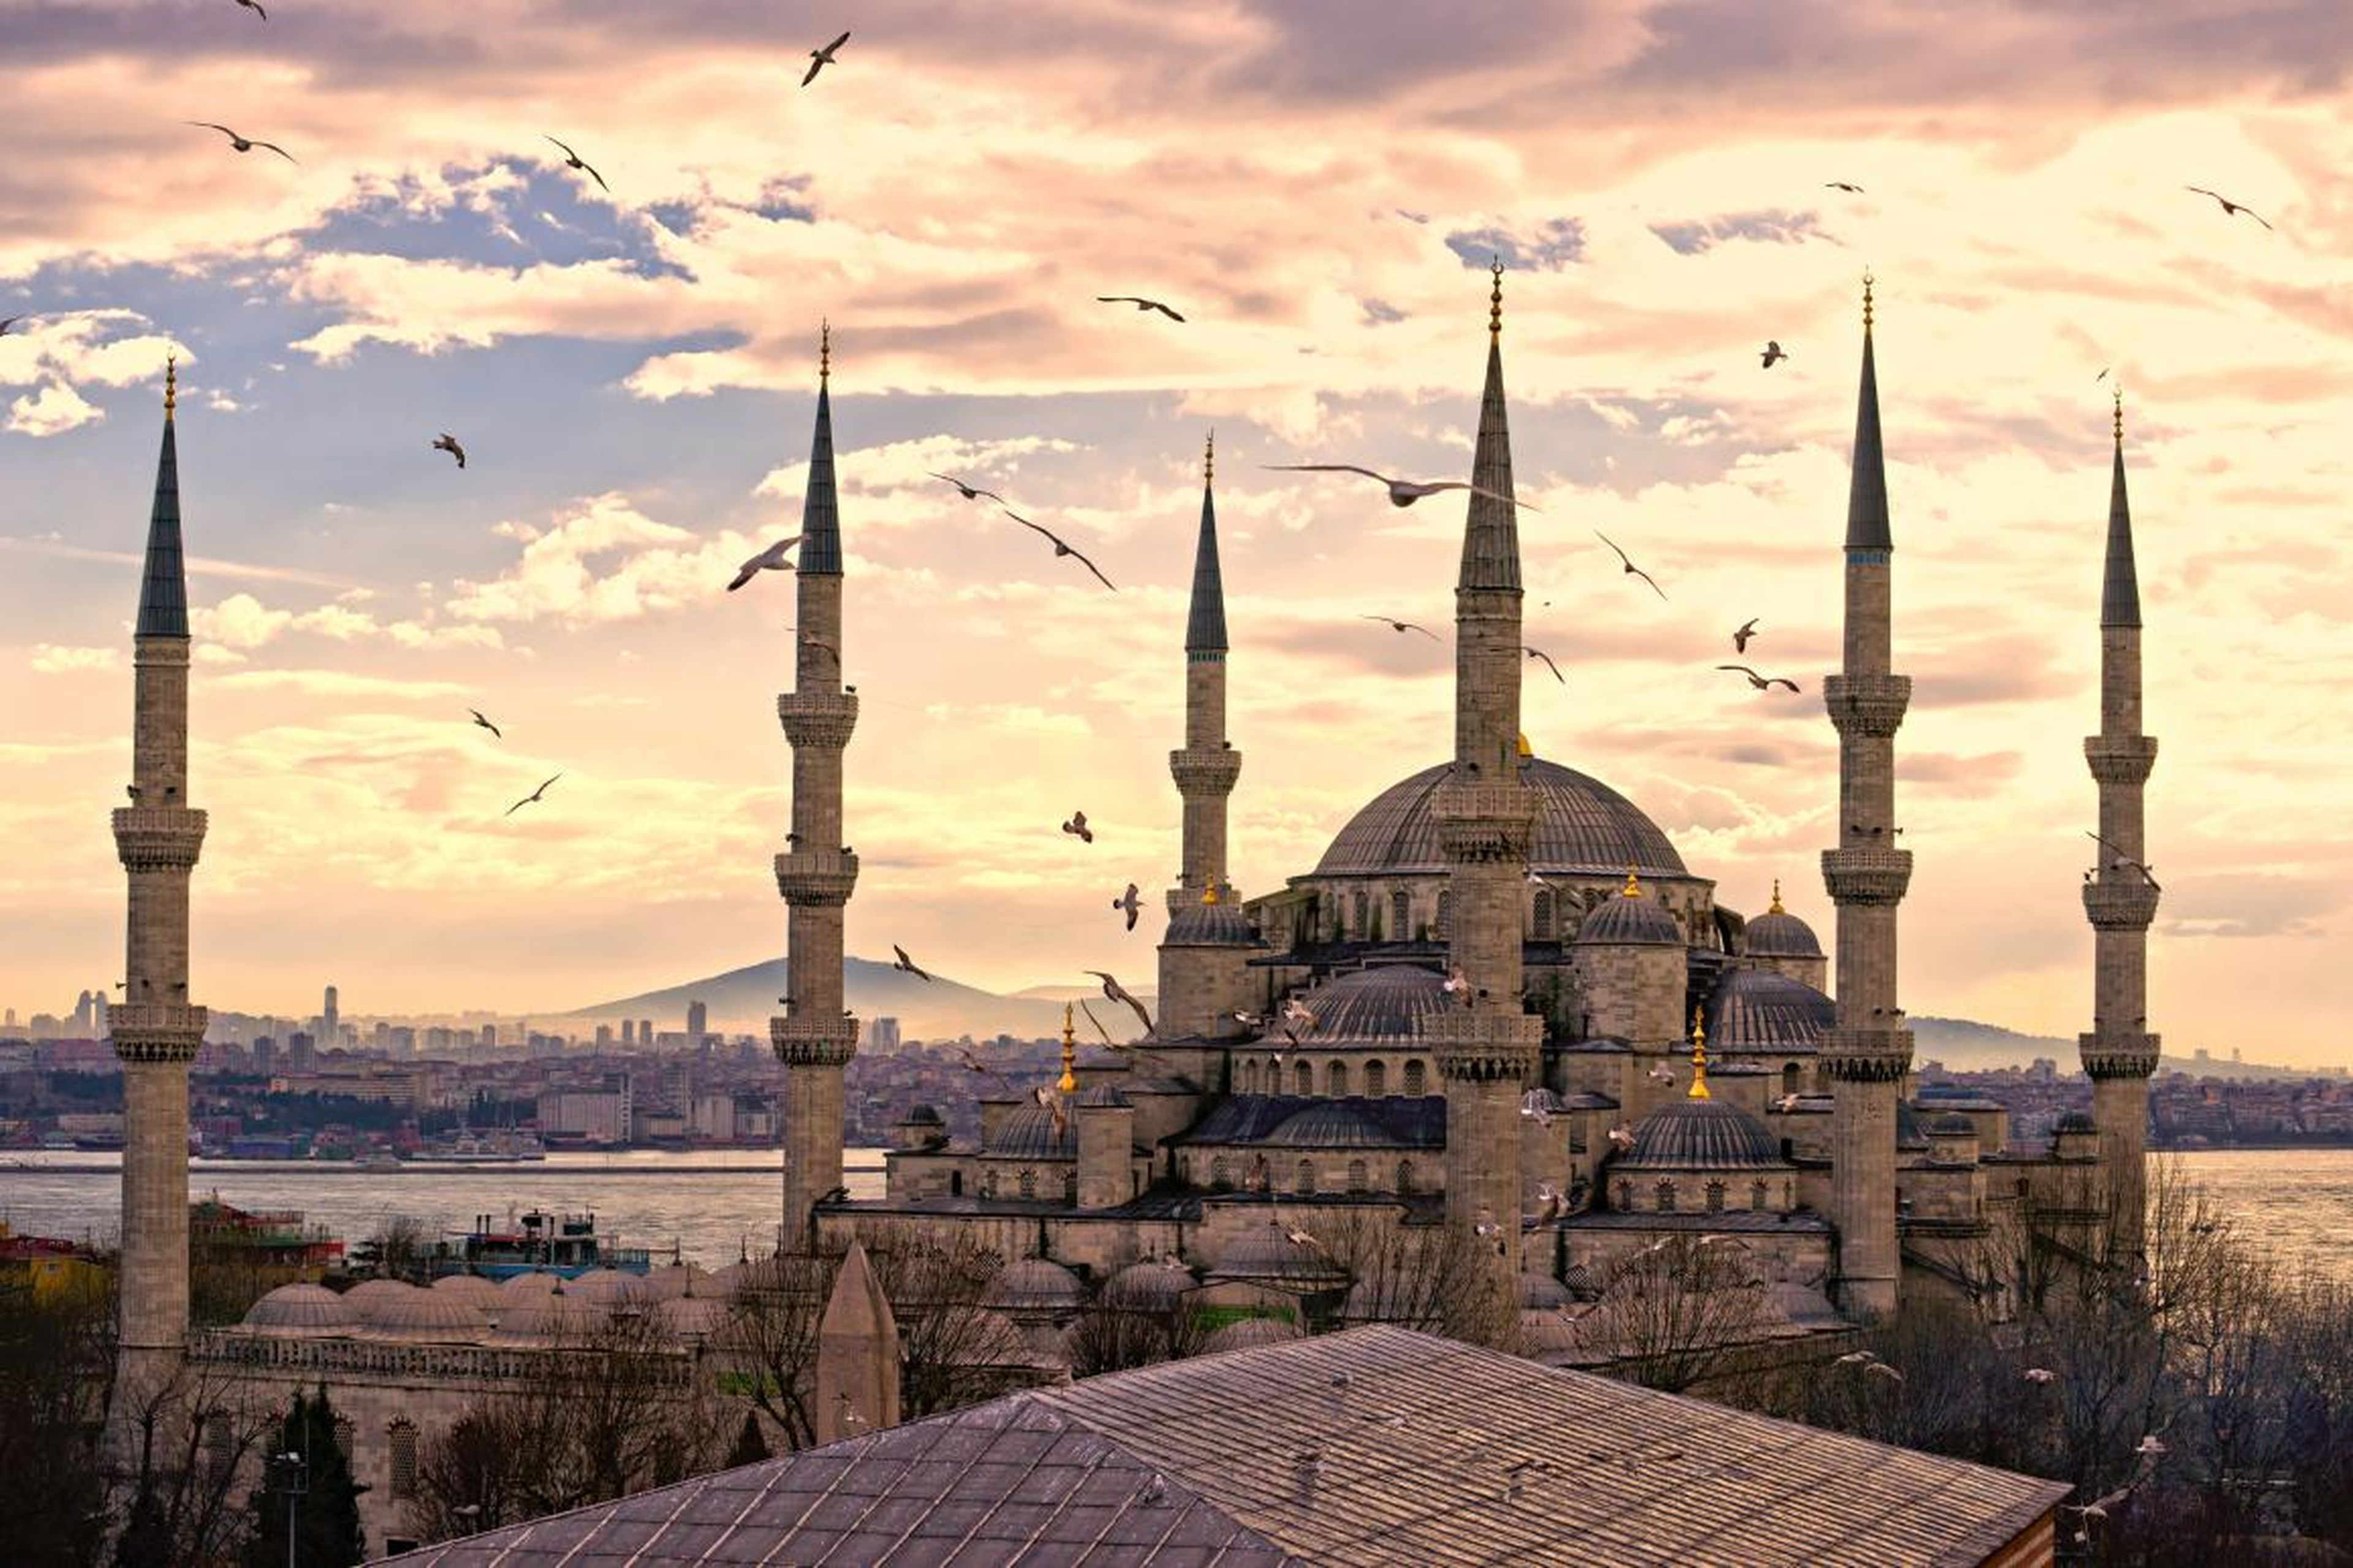 Quizás el único templo que puede igualar su grandeza es la Mezquita Azul de Estambul, construida a principios del siglo XVII en el apogeo del Imperio Otomano.